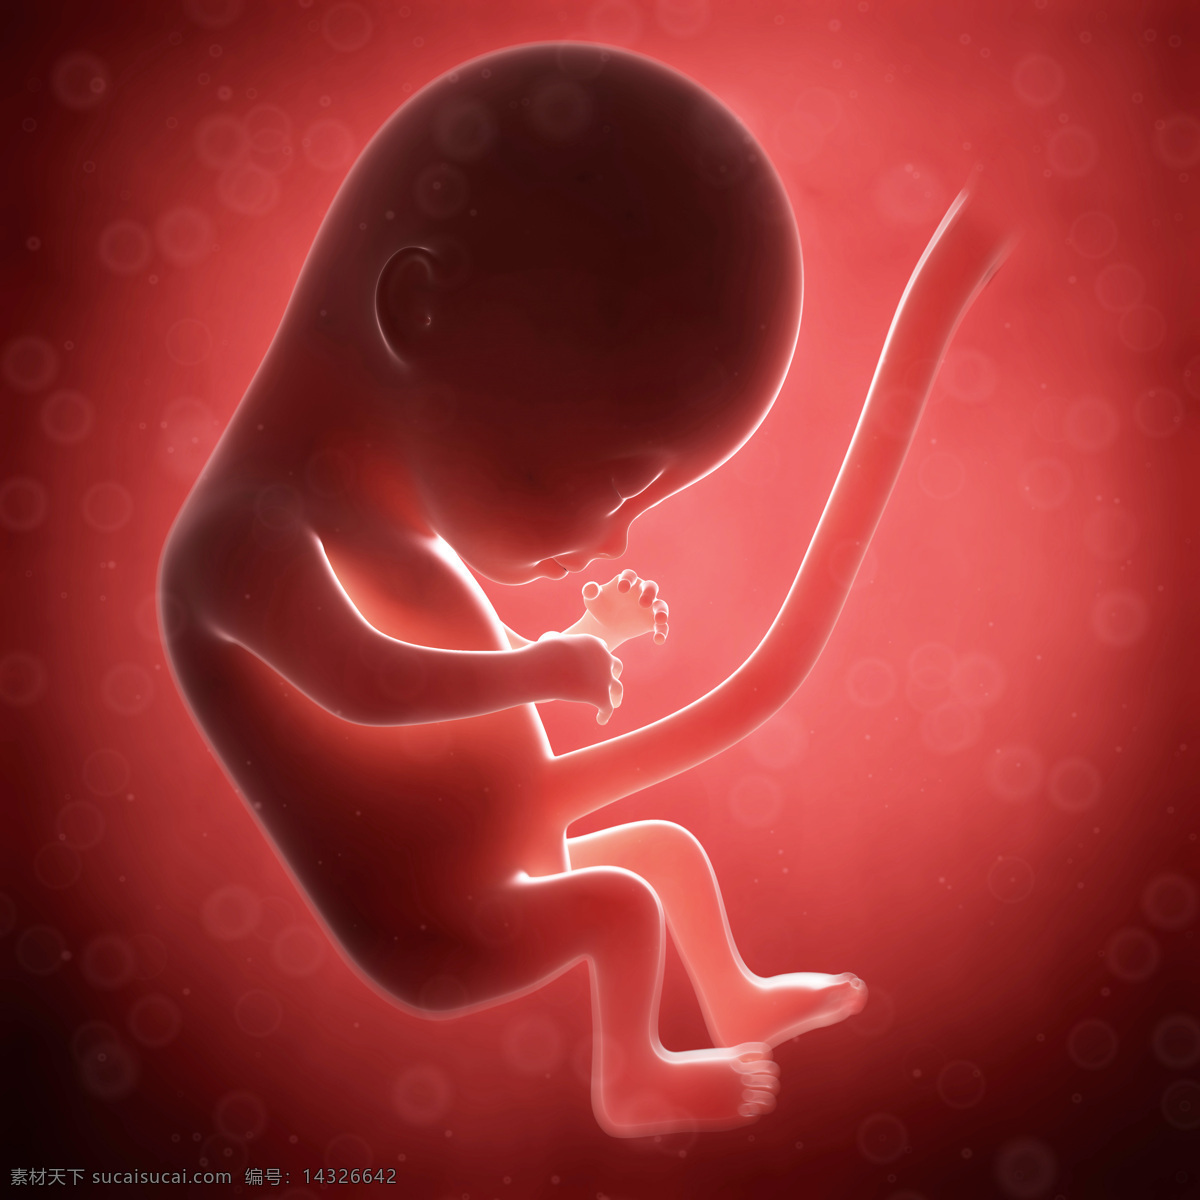 脐带 连接 胎儿 婴儿 发育 孕育 胚胎发育 儿童图片 人物图片